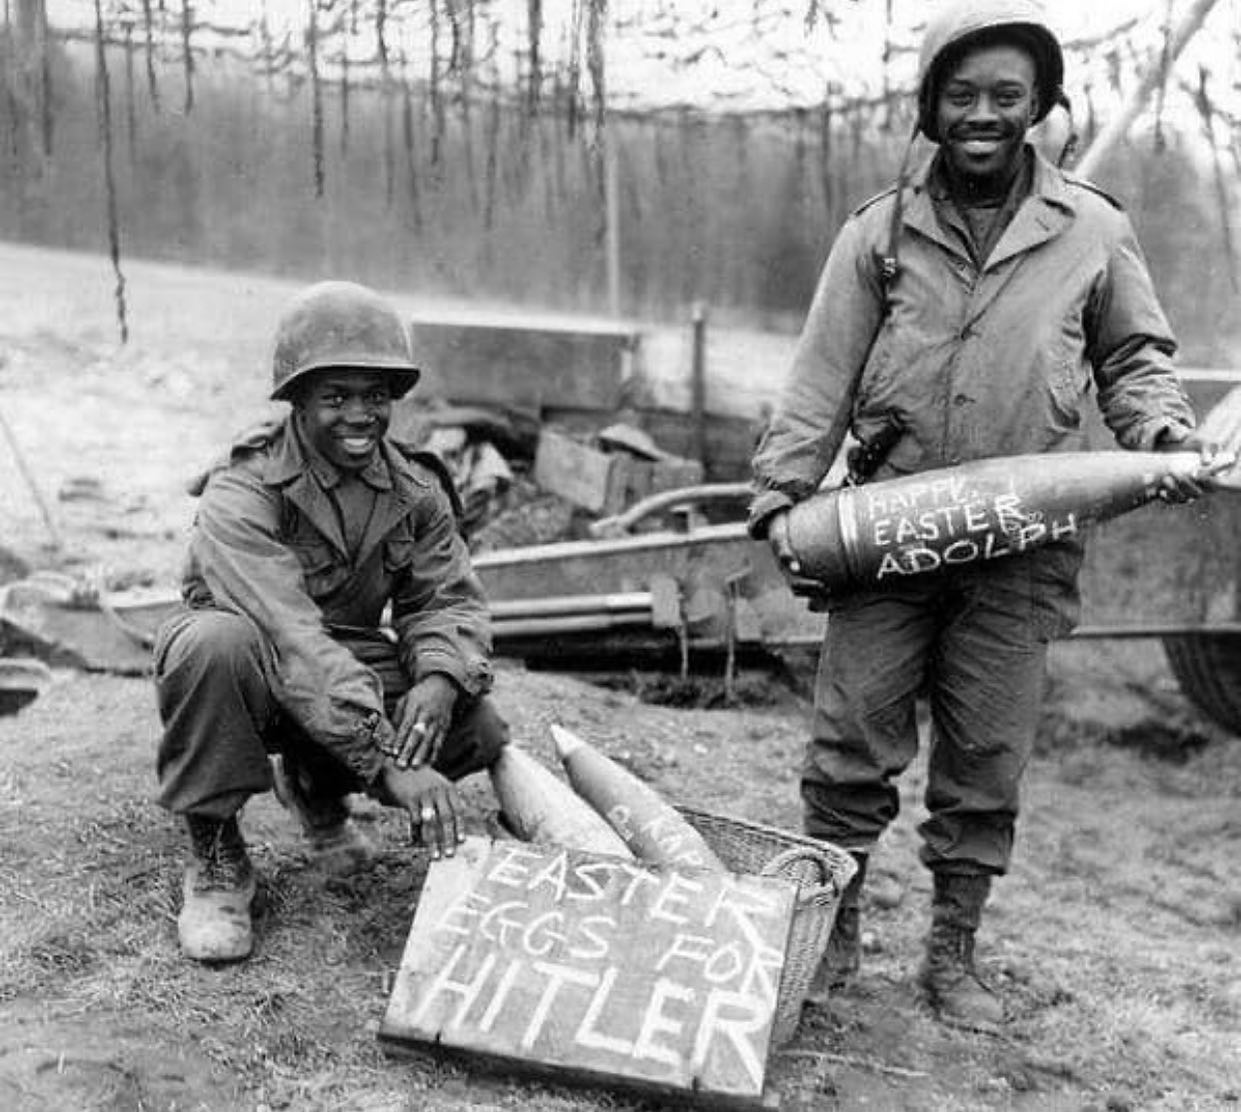 American troops celebrate Easter - 1945.jpg